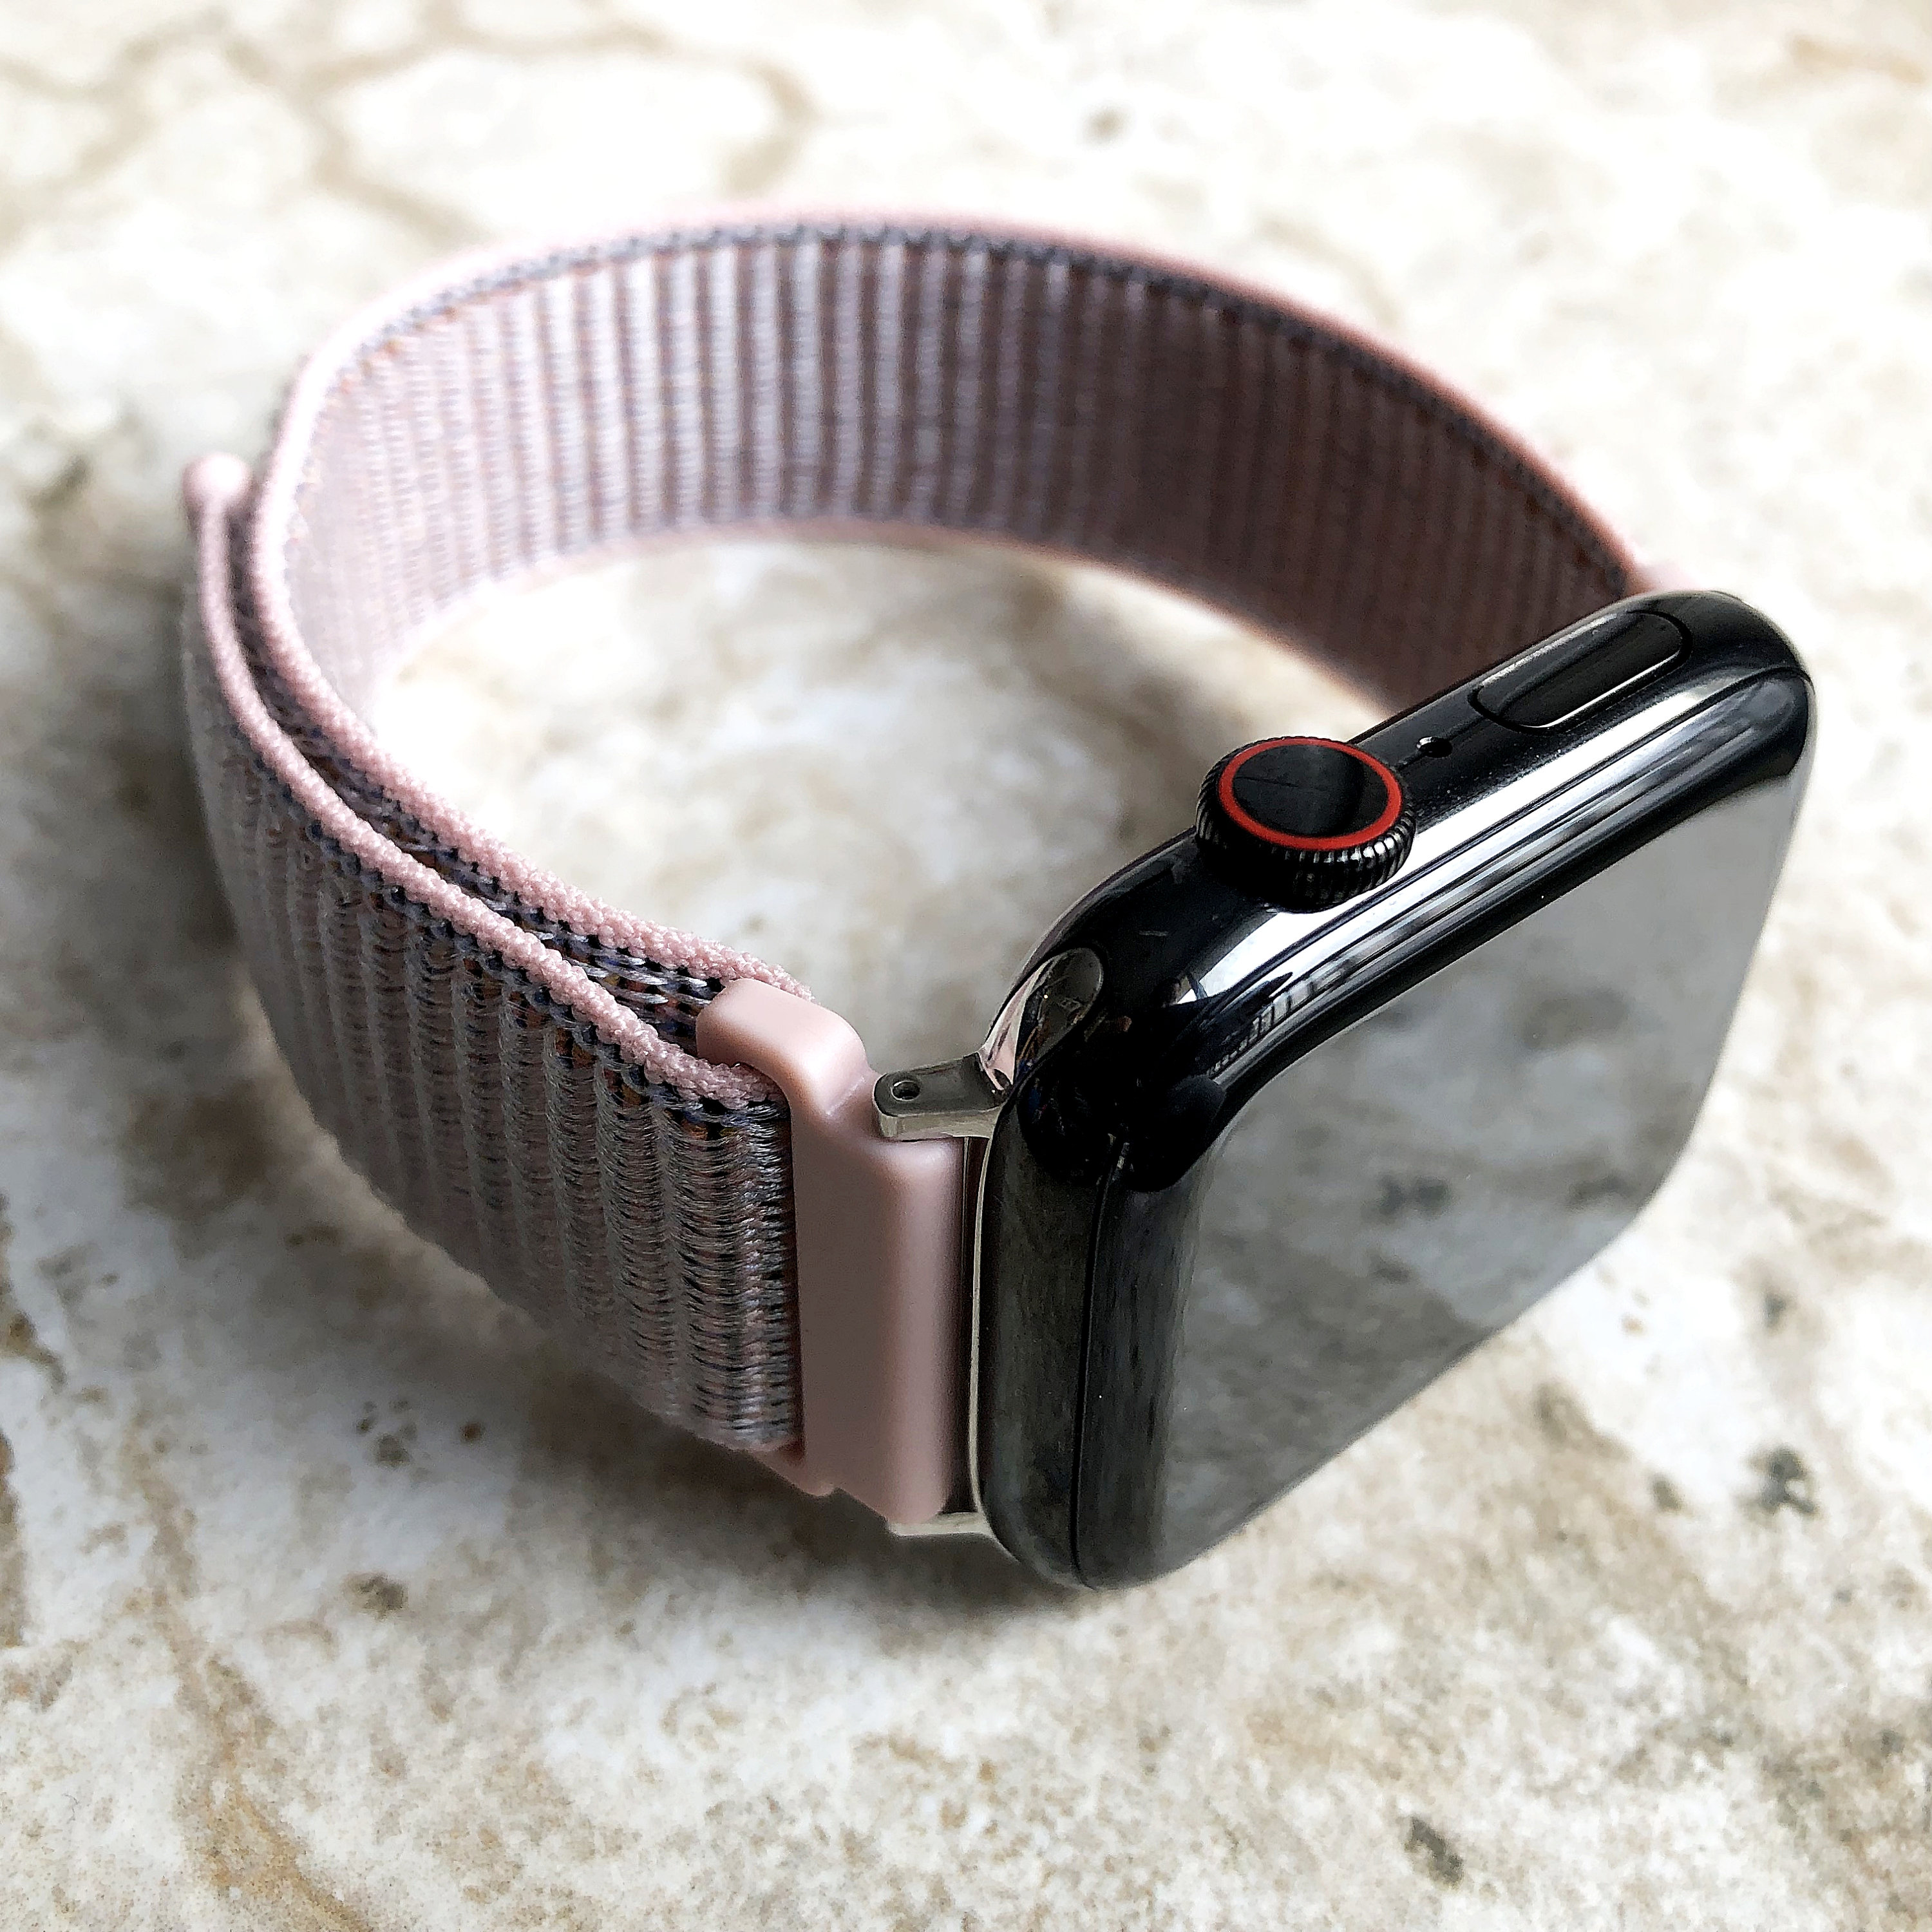 Reloj smart watch con 7 correas intercambiables de diferentes diseños /  ultra 7 in 1 strap – Joinet